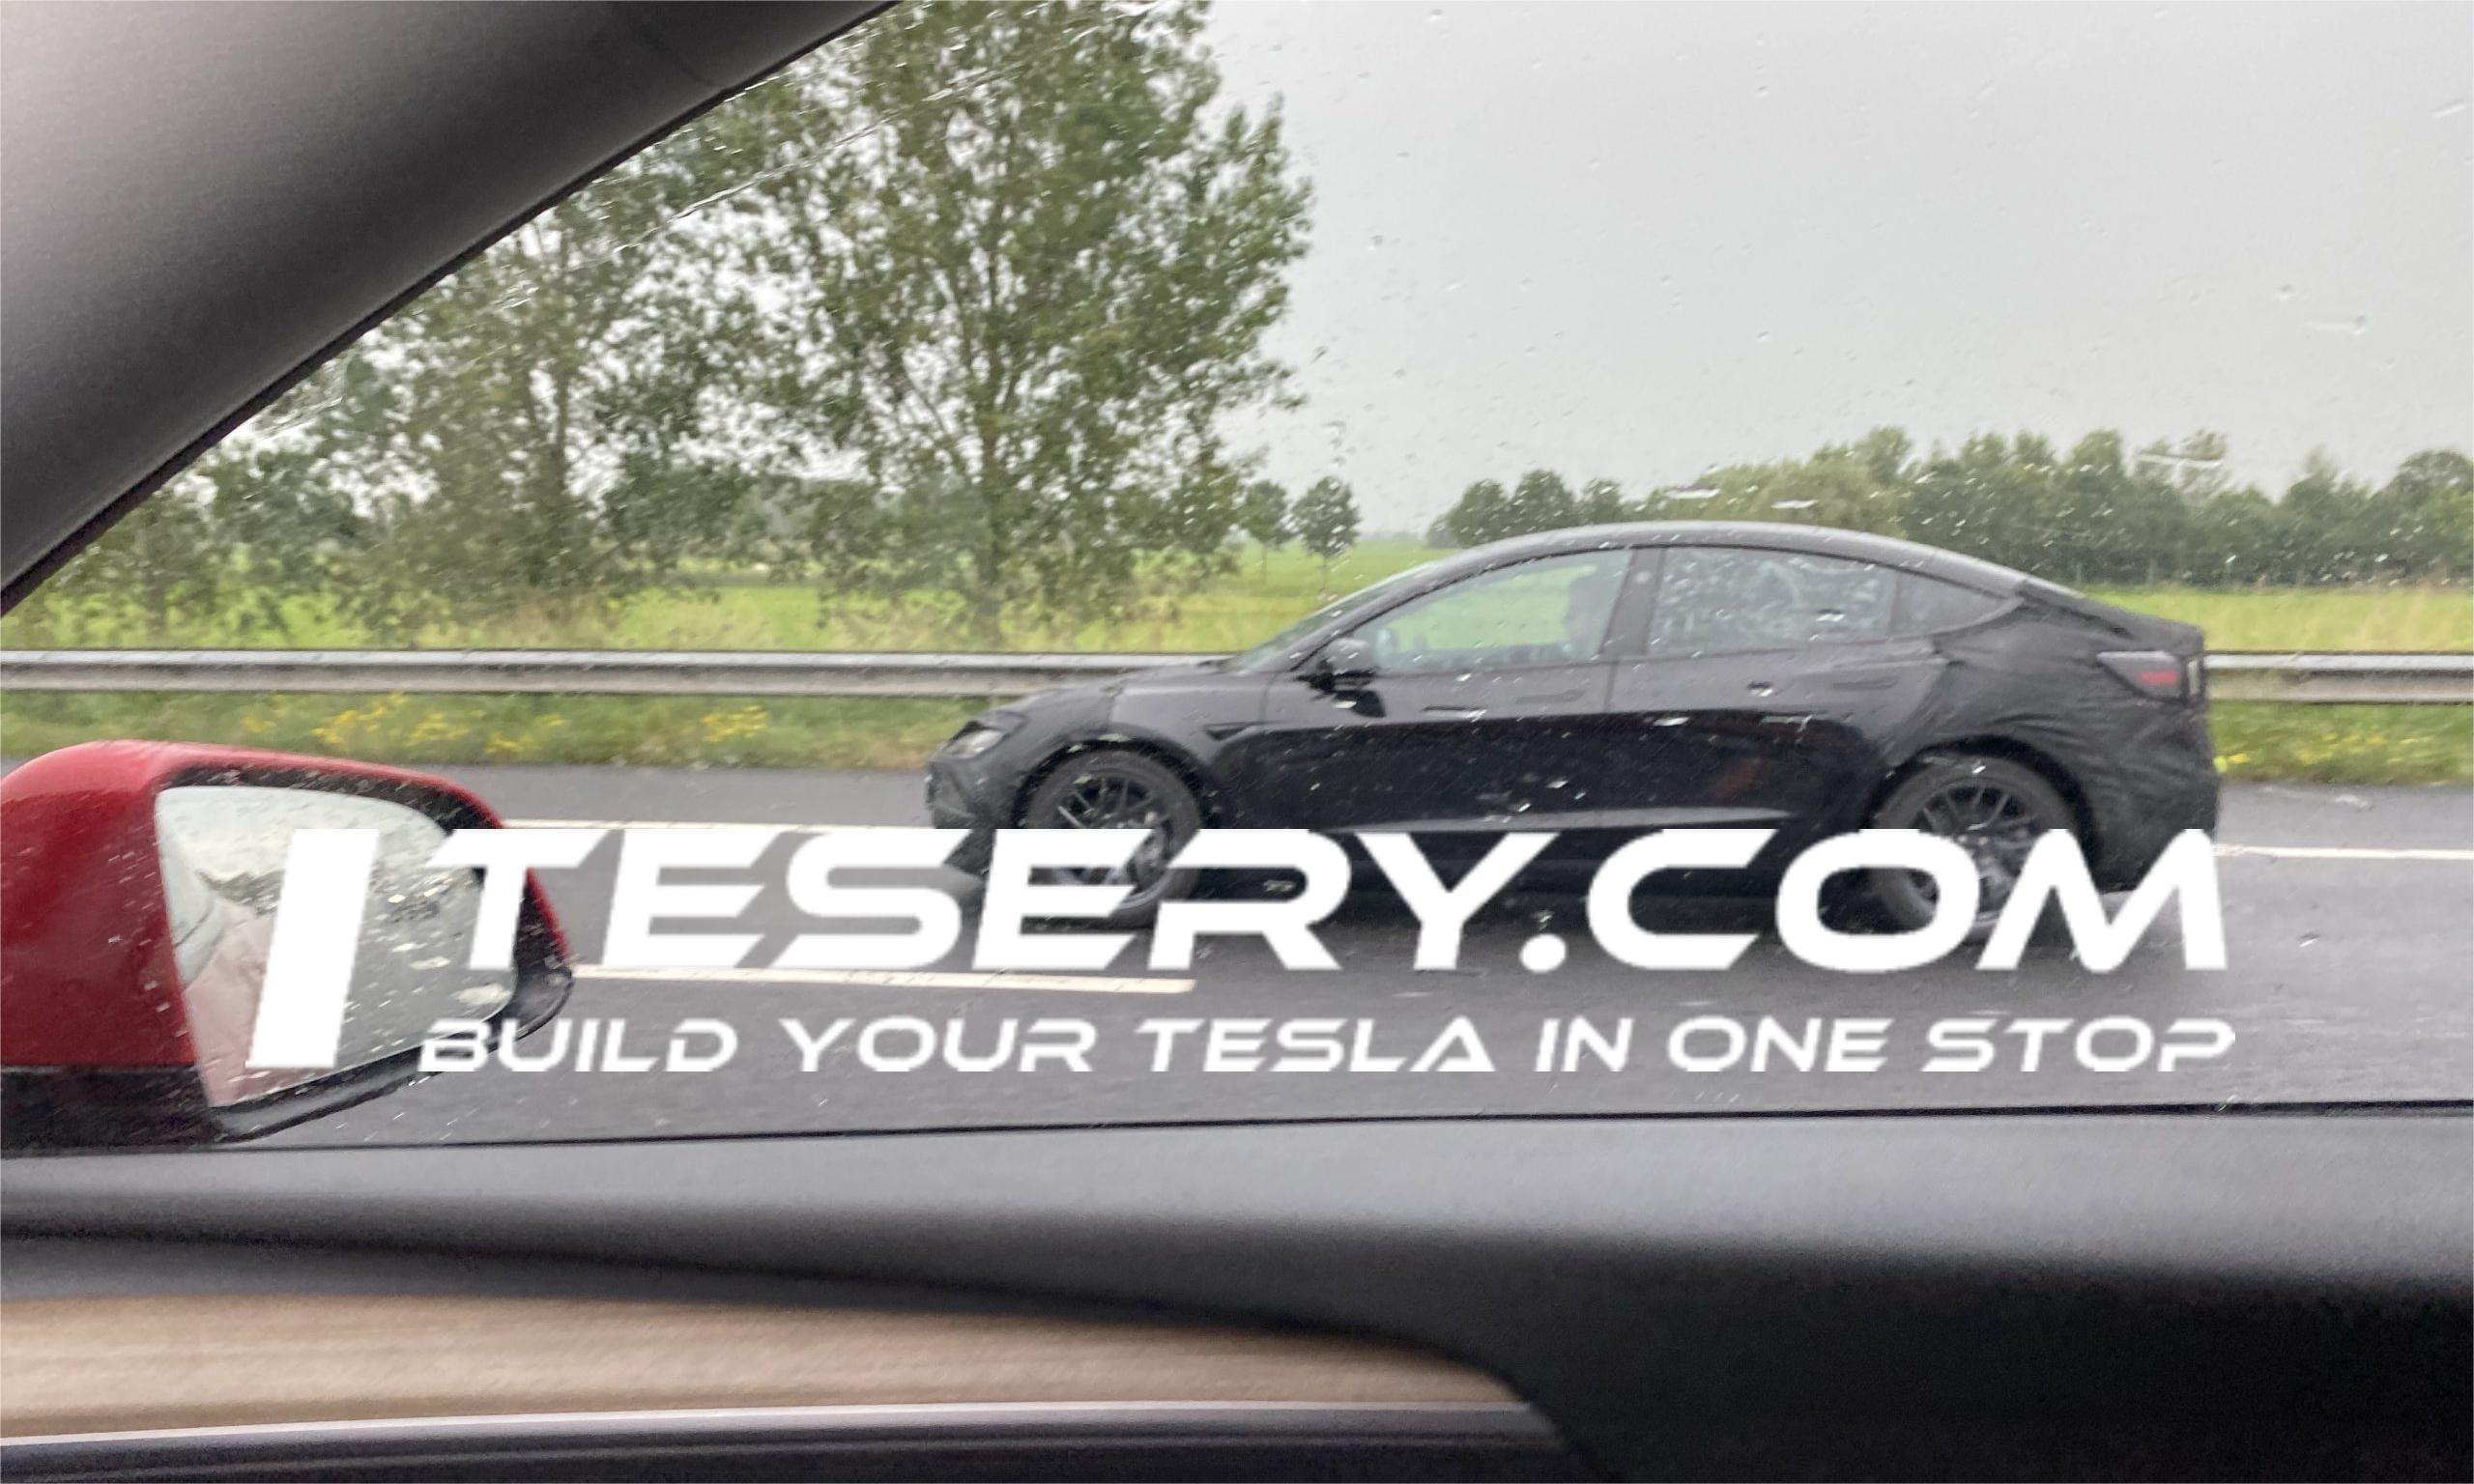 Tesla Model 3 Highland wurde möglicher weise in Europa entdeckt